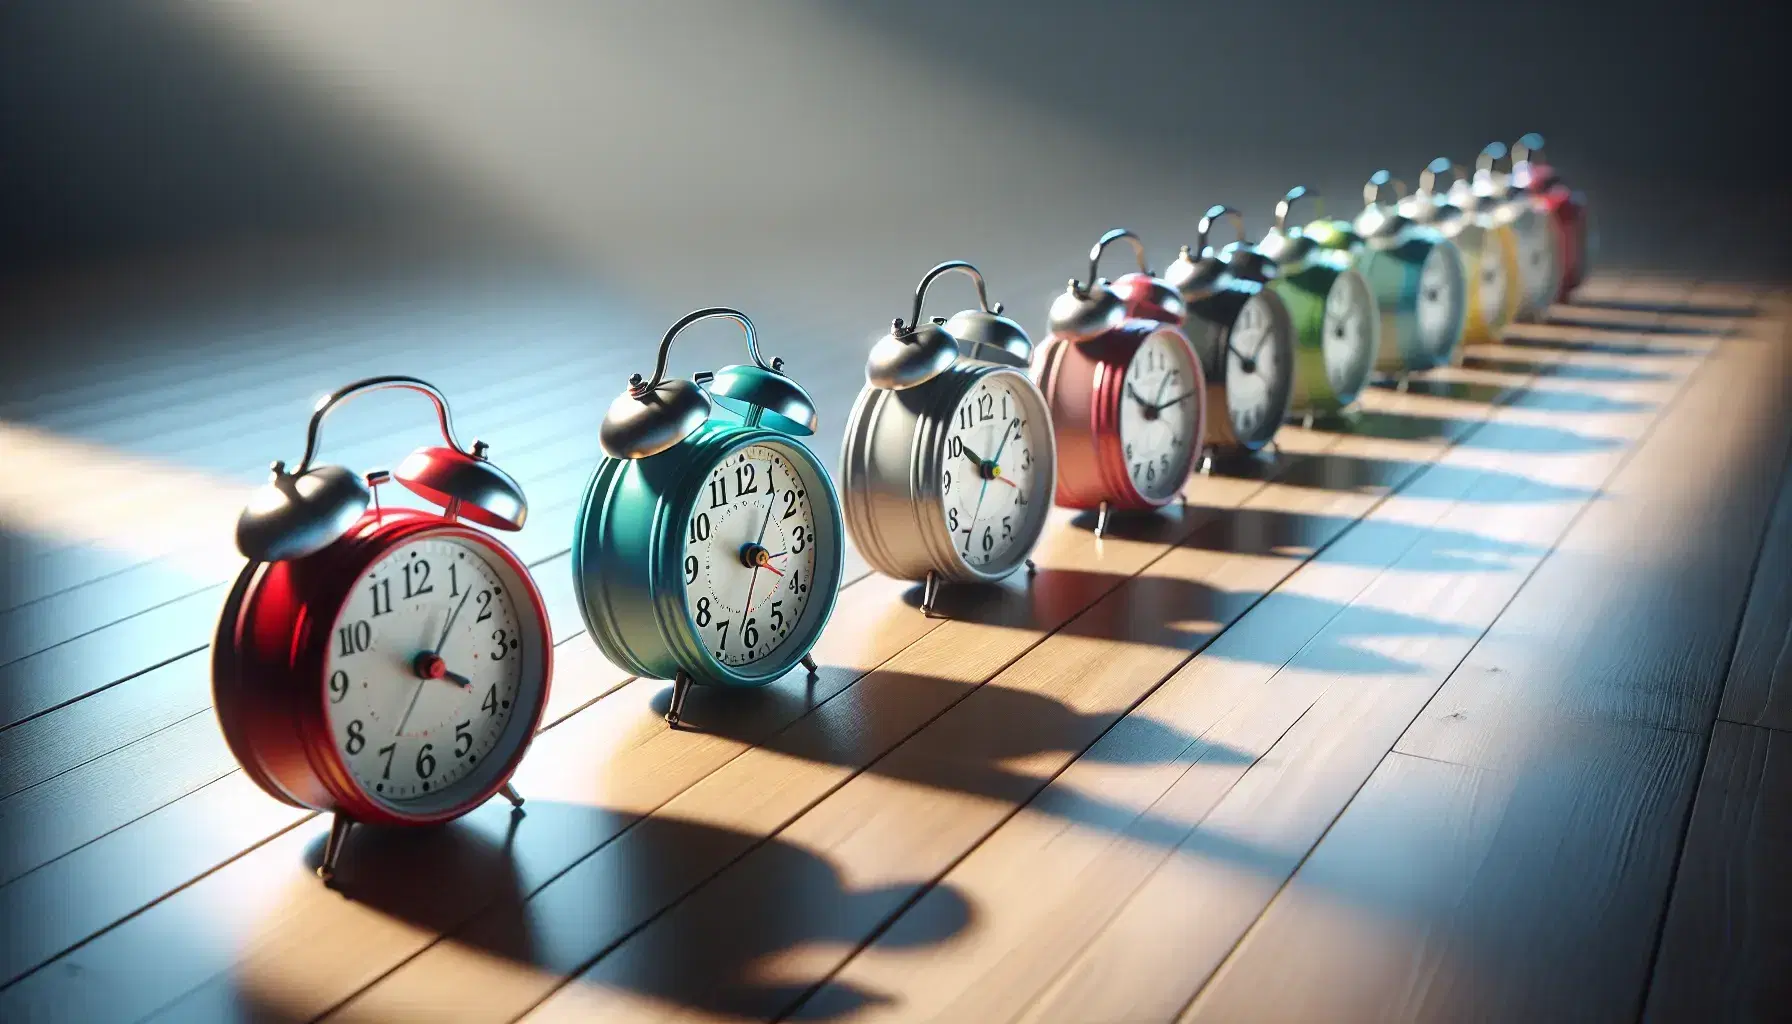 Relojes despertadores clásicos con campanas en fila sobre superficie de madera, mostrando diferentes horas y variados colores como rojo, azul, verde, amarillo y blanco.